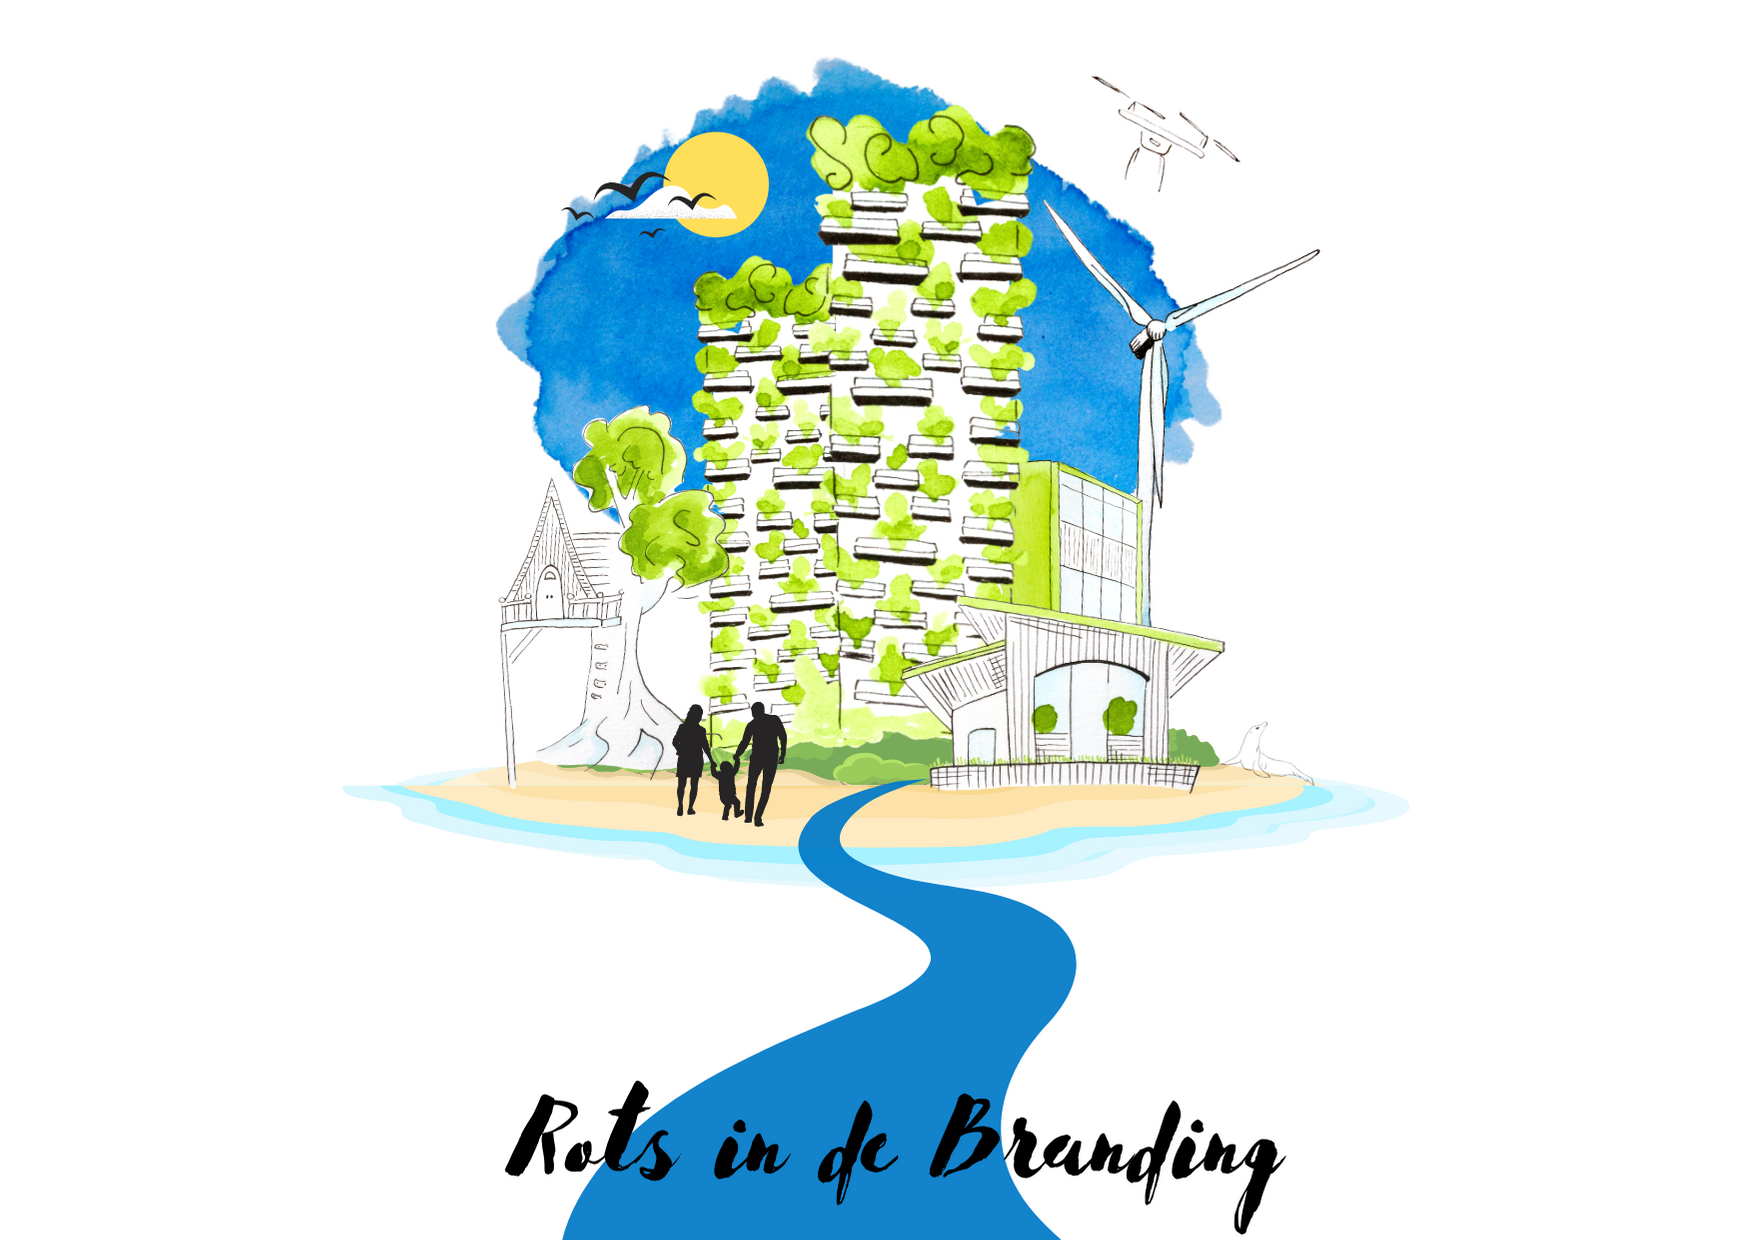 Watercolour illustration of utopian, sustainable island